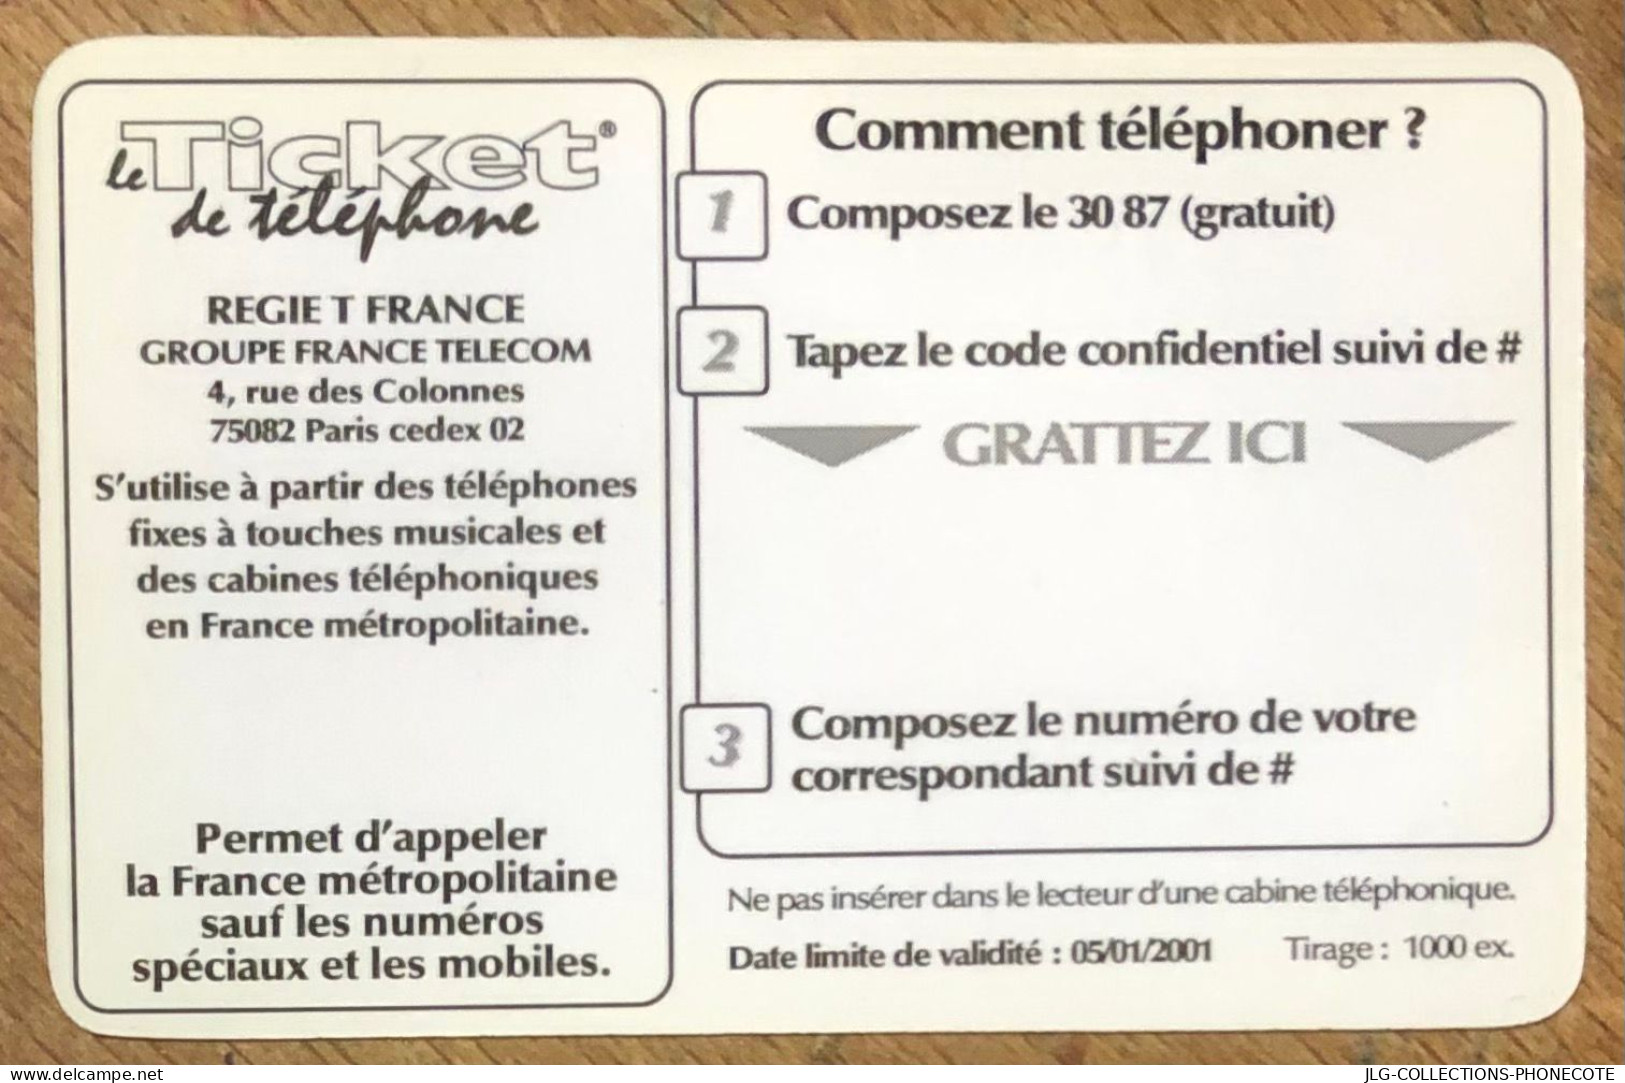 TICKET TÉLÉPHONE TOULOUSE SPÉCIMEN PREPAID PREPAYÉE CALLING CARD NO TELECARTE PHONECOTE SCHEDA PHONE CARD - Tickets FT